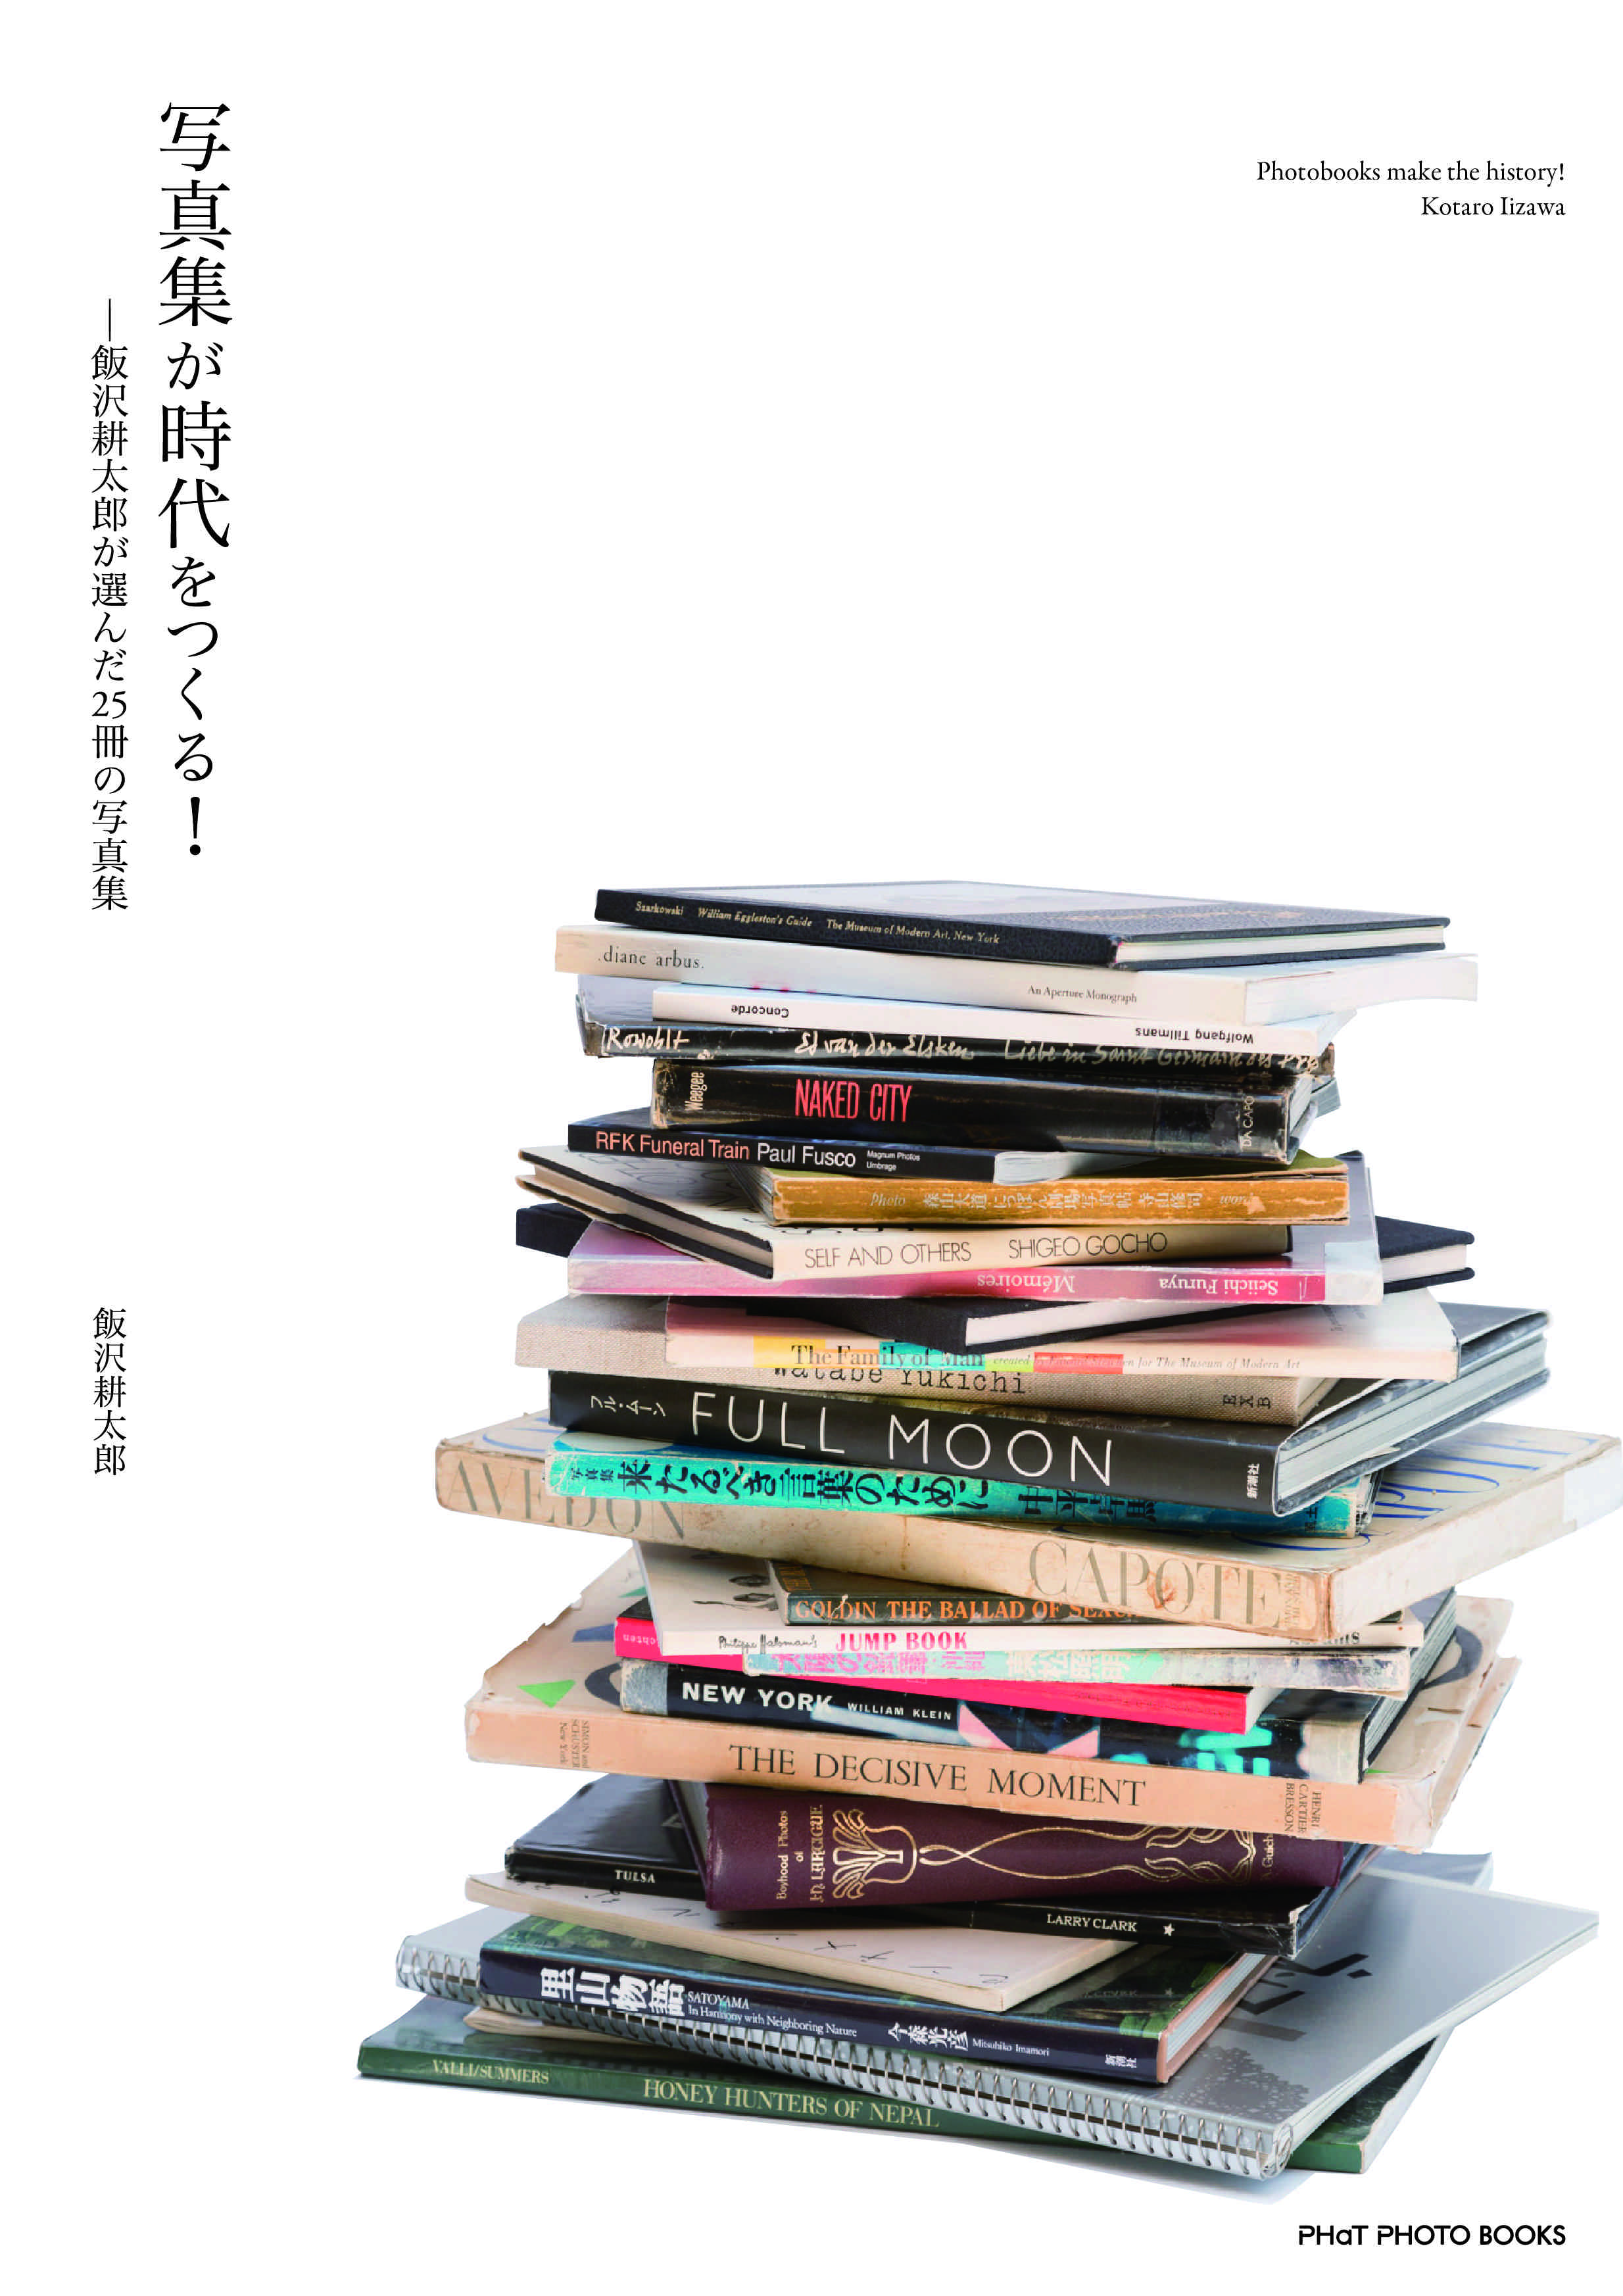 写真集を語り尽くすvol4 写真集が時代をつくる 飯沢耕太郎が選んだ25冊の写真集 出版記念トーク パーティ 写真集食堂 めぐたま